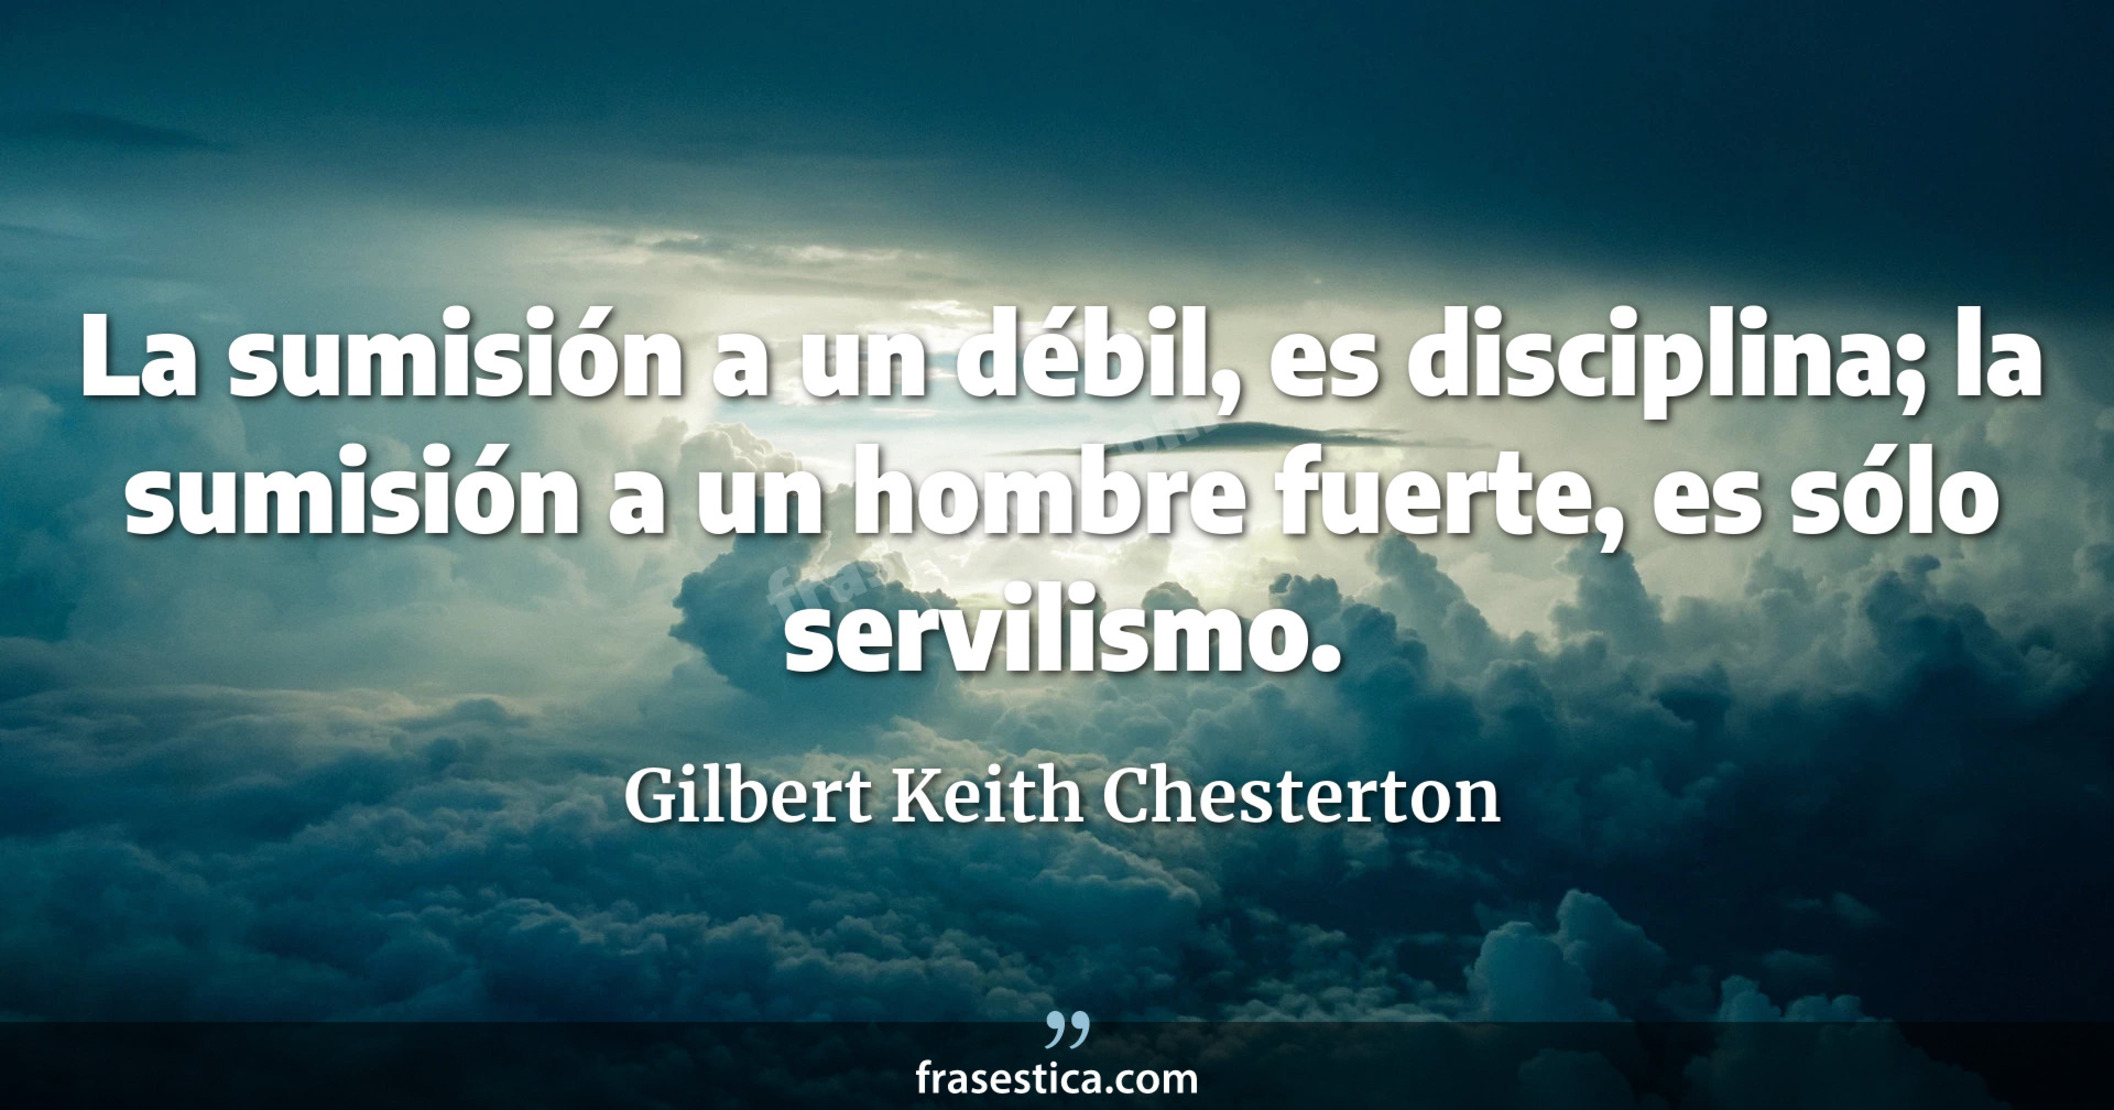 La sumisión a un débil, es disciplina; la sumisión a un hombre fuerte, es sólo servilismo. - Gilbert Keith Chesterton